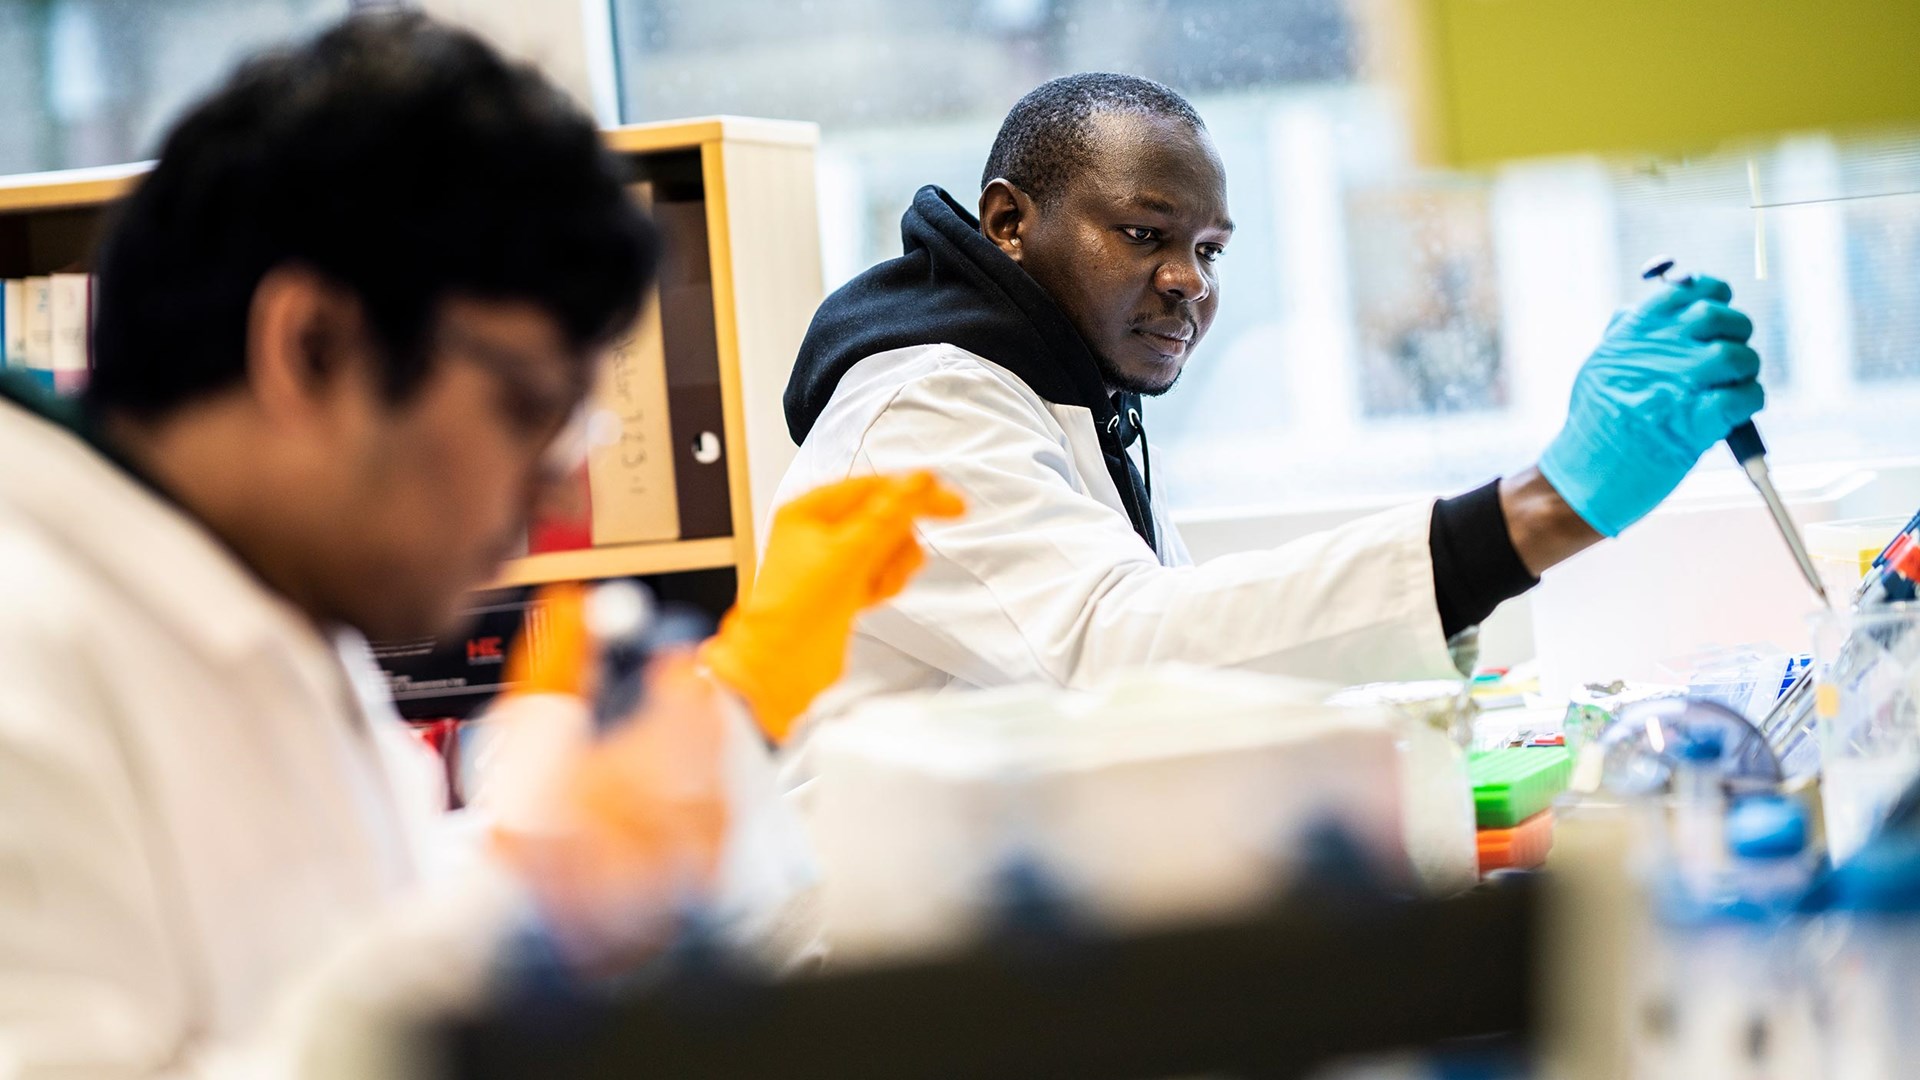 Bild av två personer i vita rockar som sitter i ett labb och pipetterar. Fokus ligger på den bortre personen. Han tittar koncentrerat på det han håller på med. 